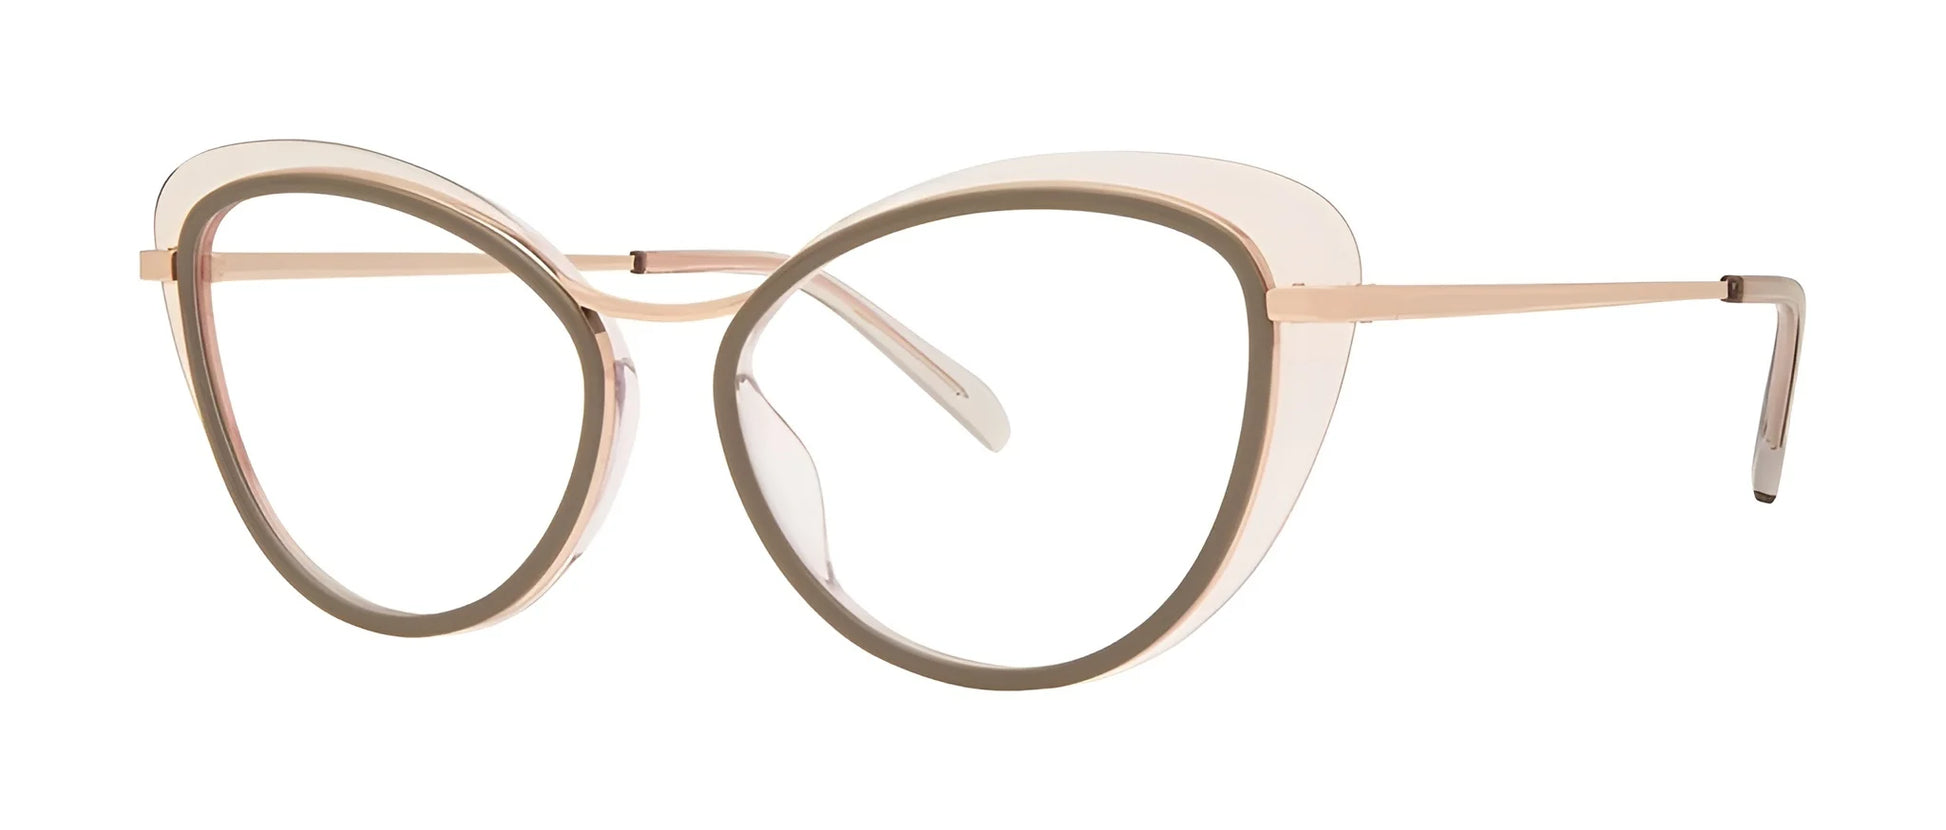 OGI FER CUTE Eyeglasses Olive / Pale Pink / Rose Gold